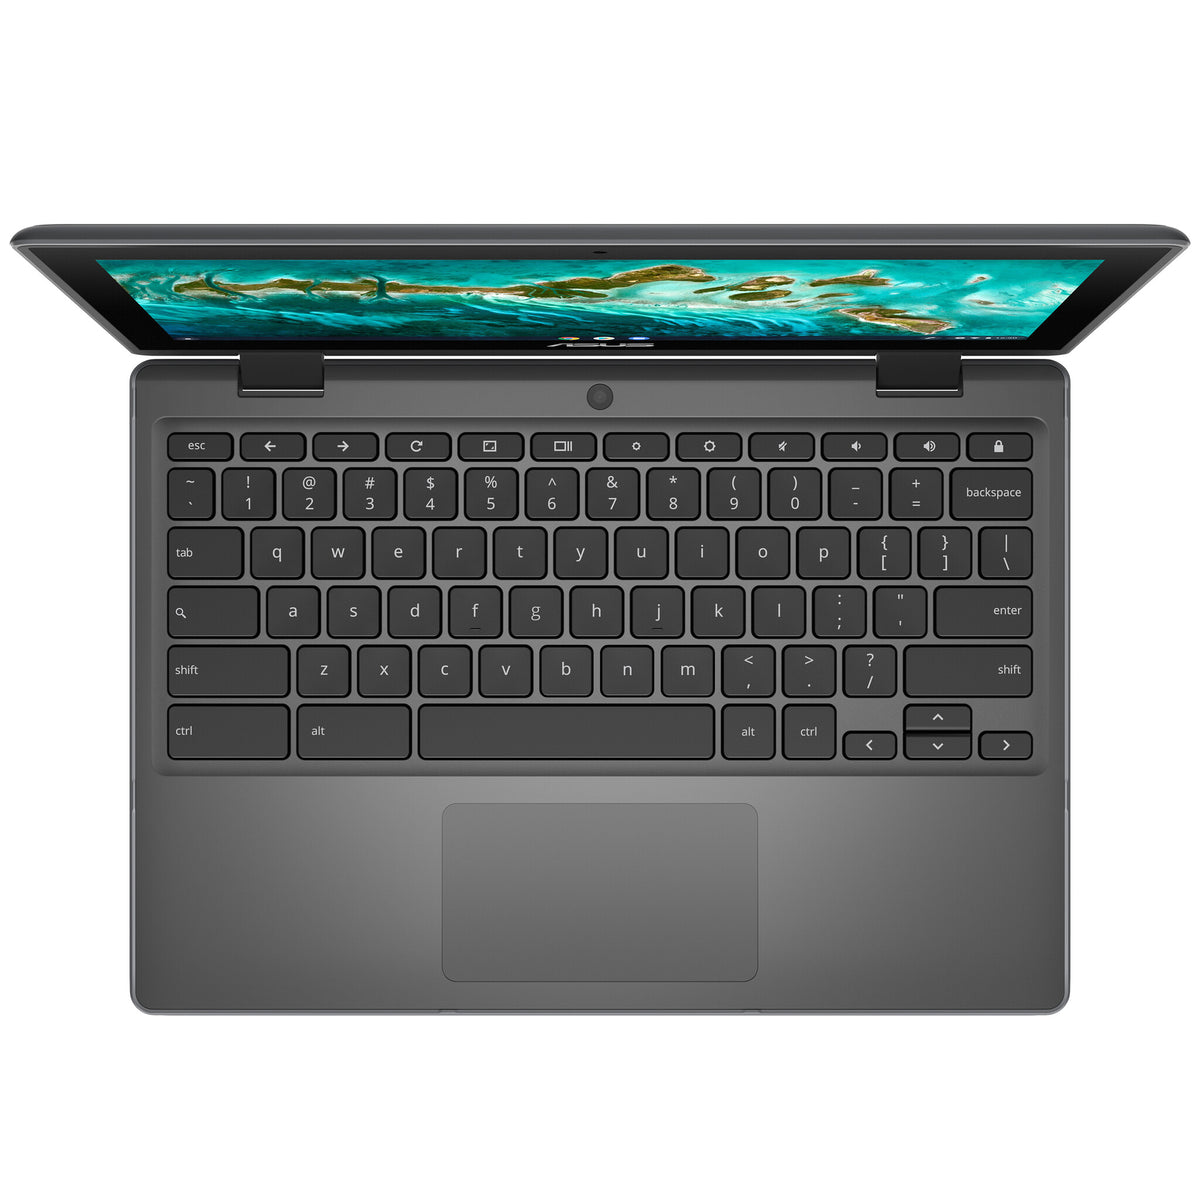 ASUS Chromebook Flip CR1 - 29.5 cm (11.6&quot;) - Touchscreen - Intel® Celeron® N4500 - 4 GB LPDDR4x-SDRAM - 64 GB eMMC - Wi-Fi 6 - ChromeOS - Grey